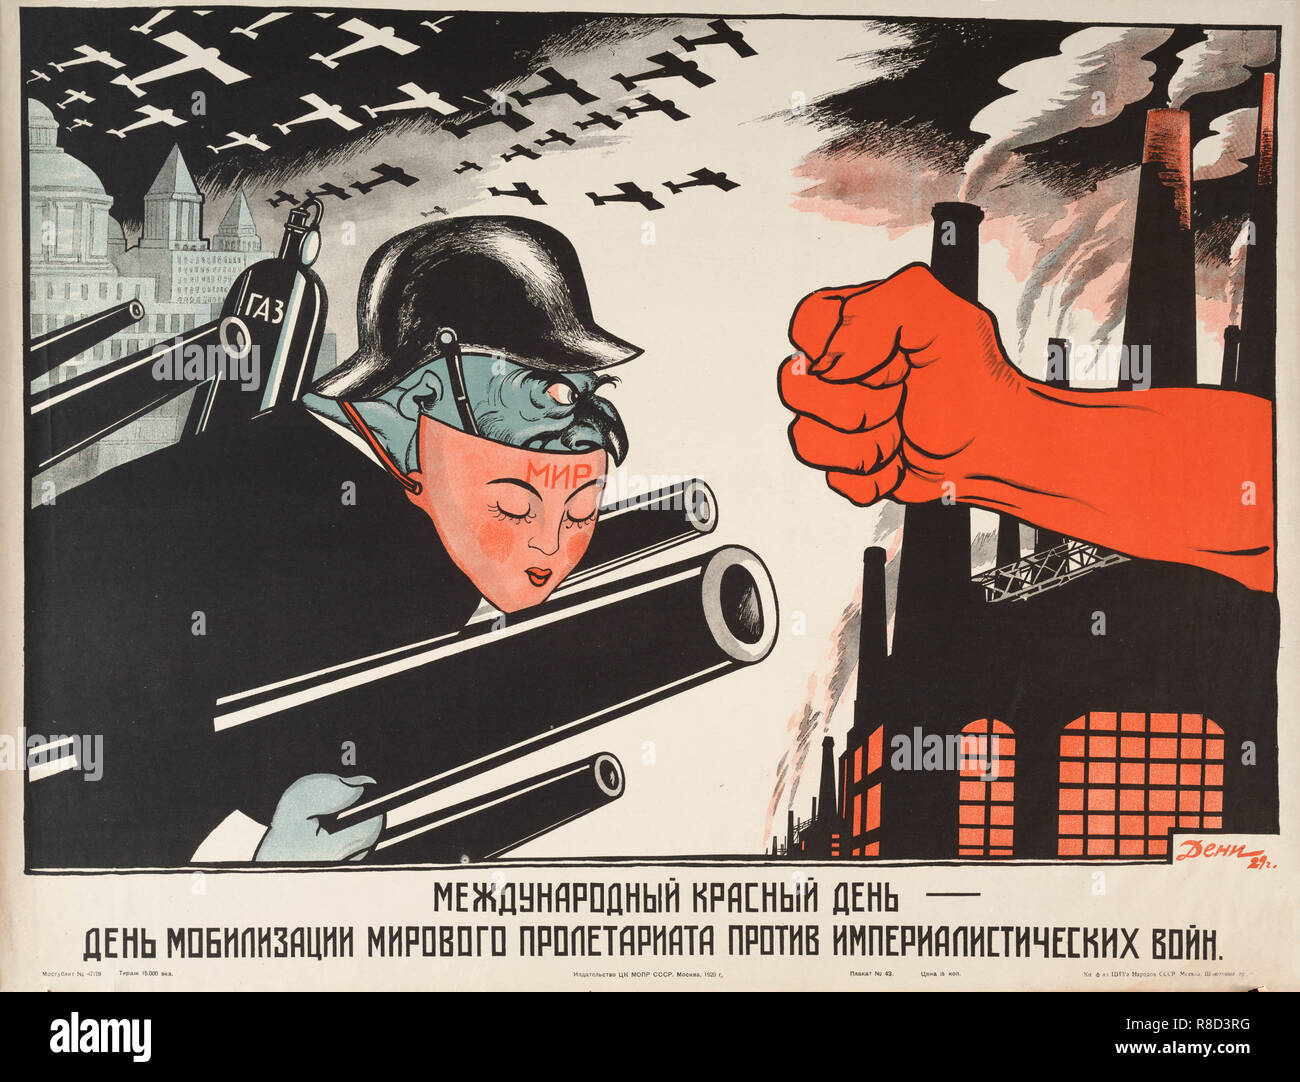 Internationale Rote Tag: Der Tag, an dem das Proletariat der Welt gegen die Armeen von imperi zu mobilisieren. Stockfoto